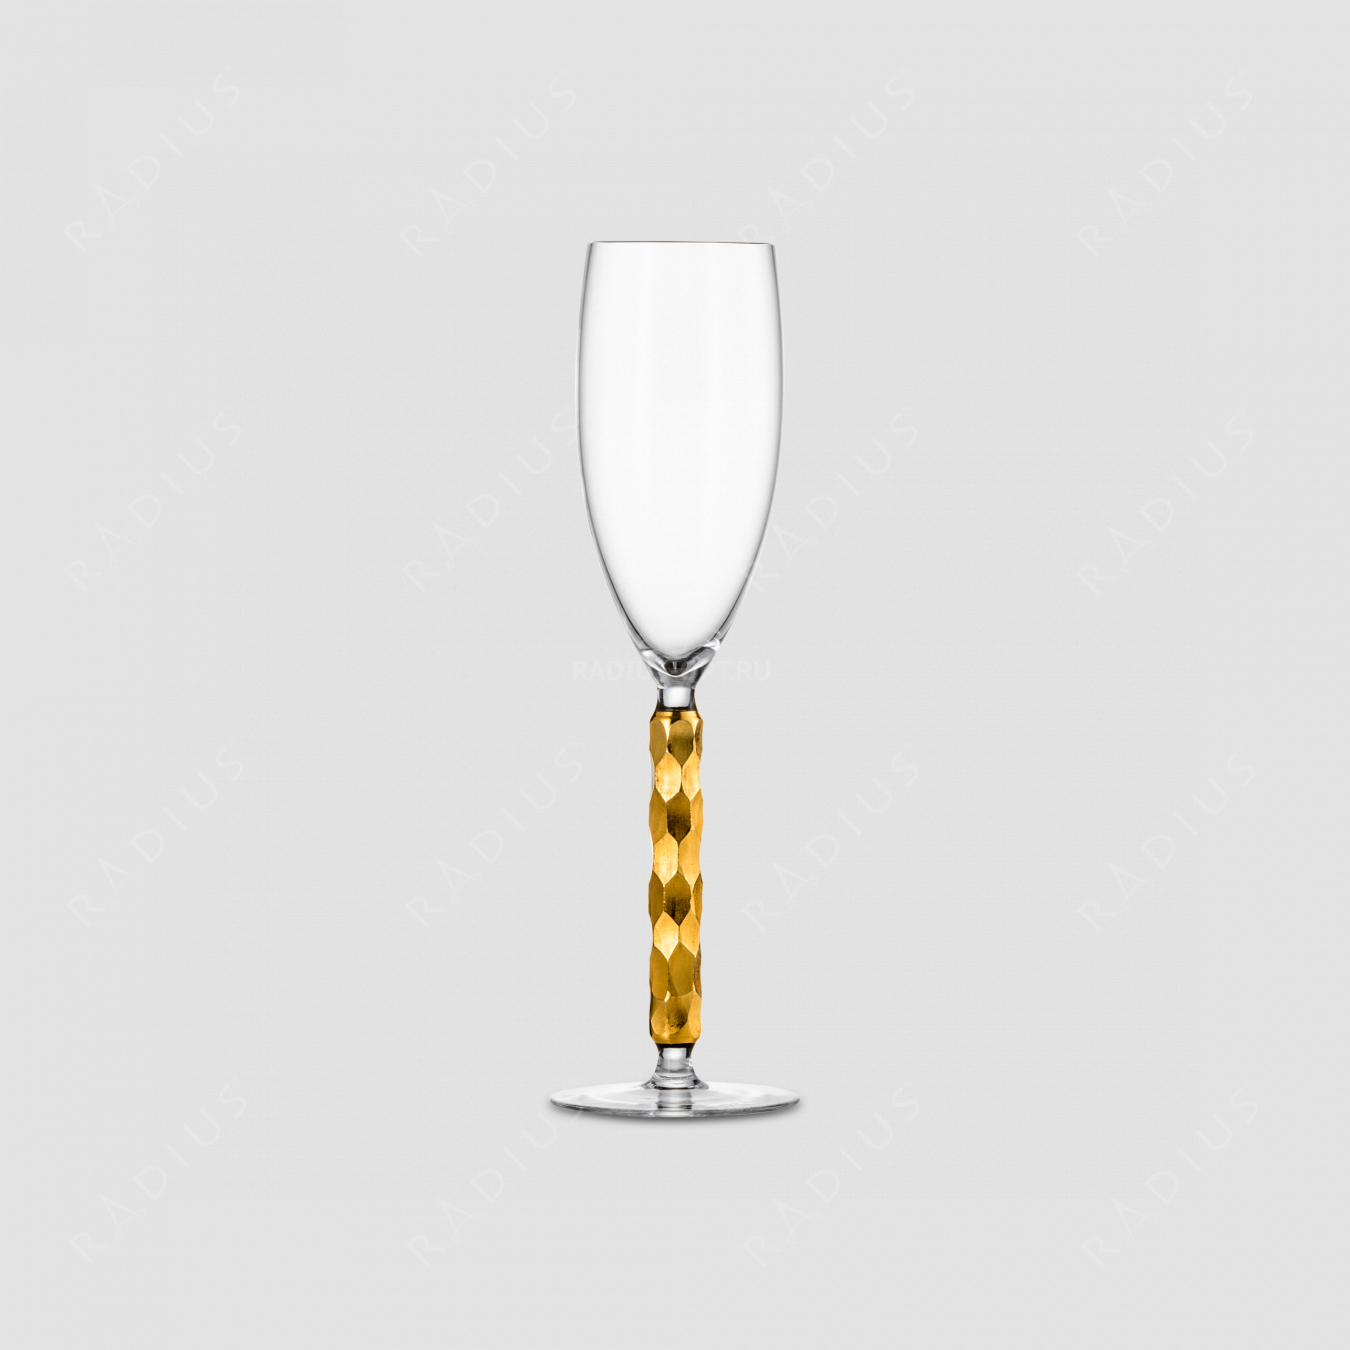 Бокал для шампанского, объем 300 мл, материал - бессвинцовый хрусталь, золото, серия Champagner Exklusiv, EISCH, Германия